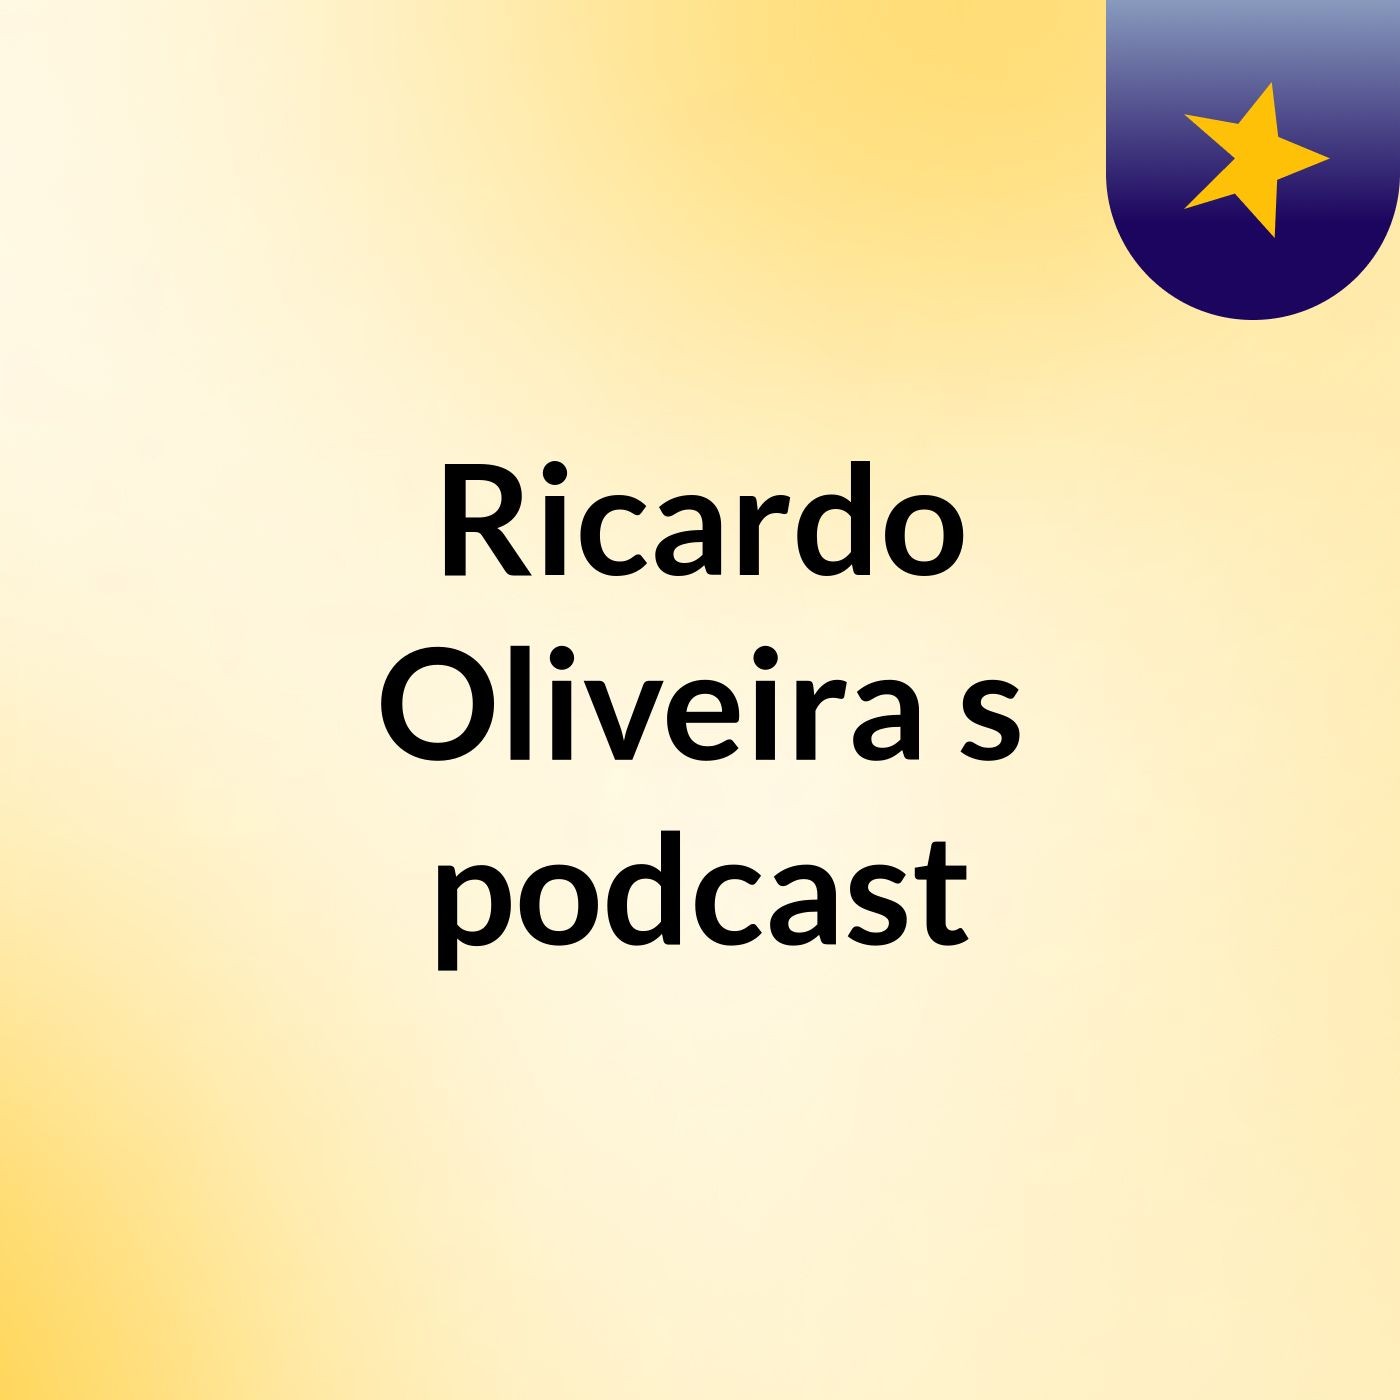 Ricardo Oliveira's podcast